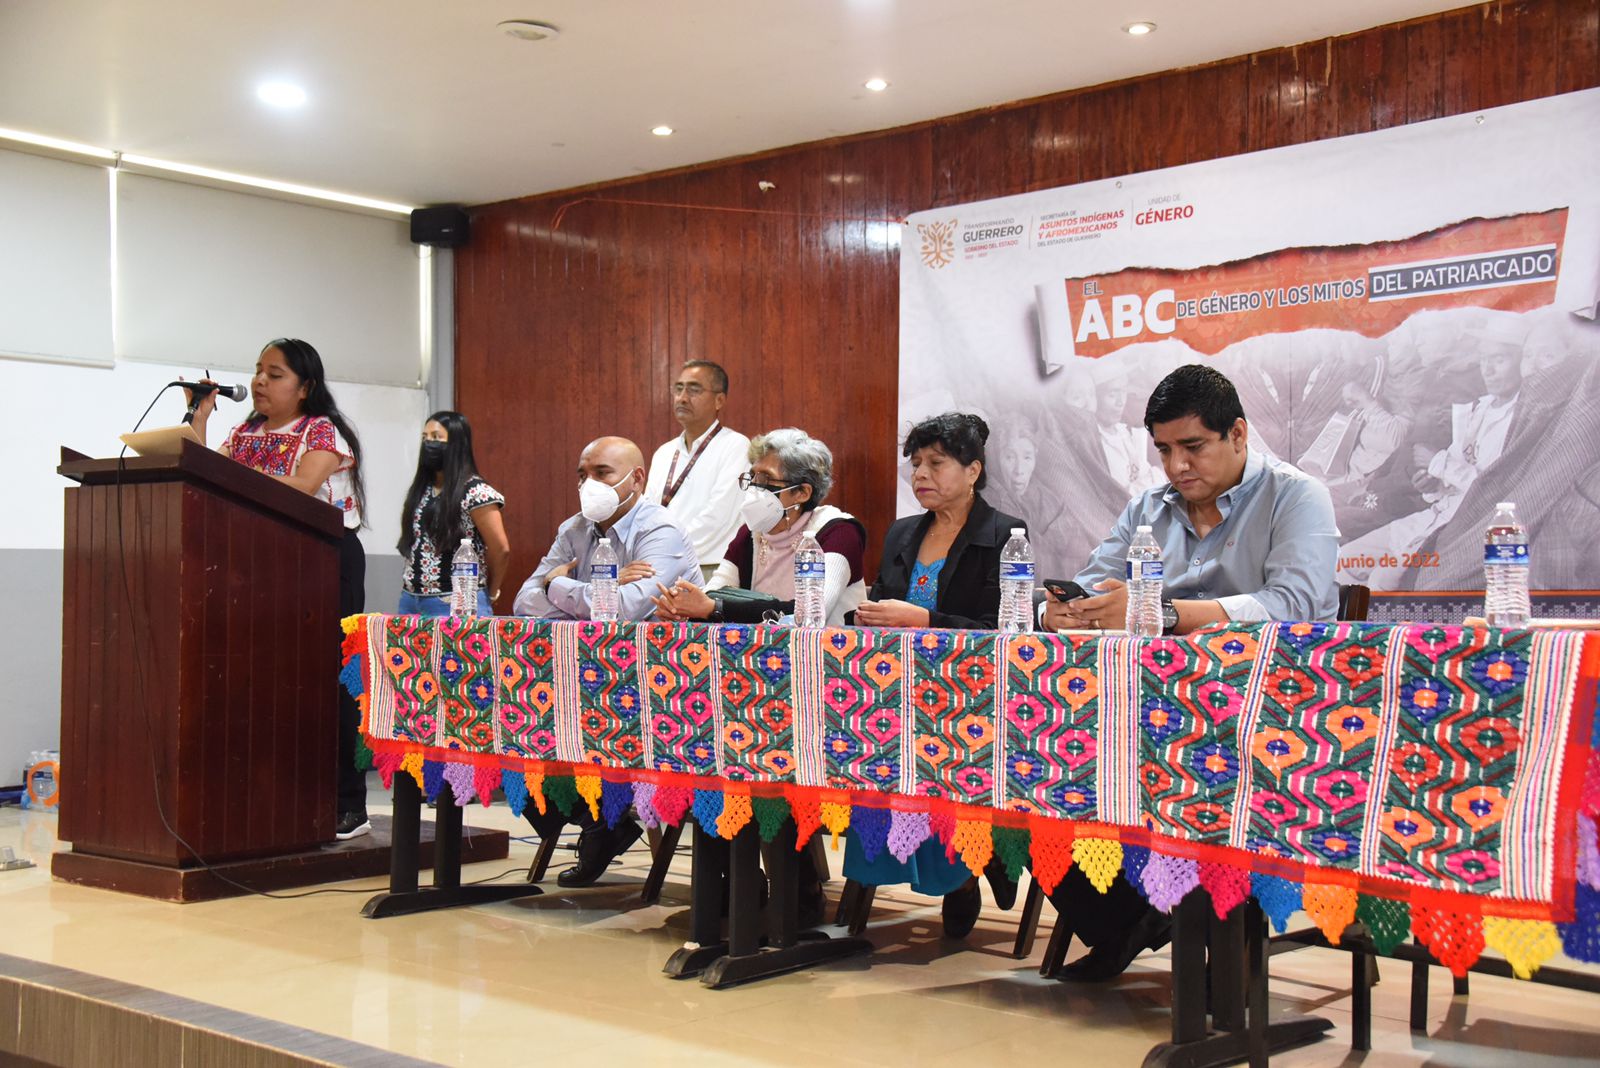 La SAIA y la UAGRO organizaron la conferencia “El ABC de género y los mitos del patriarcado”